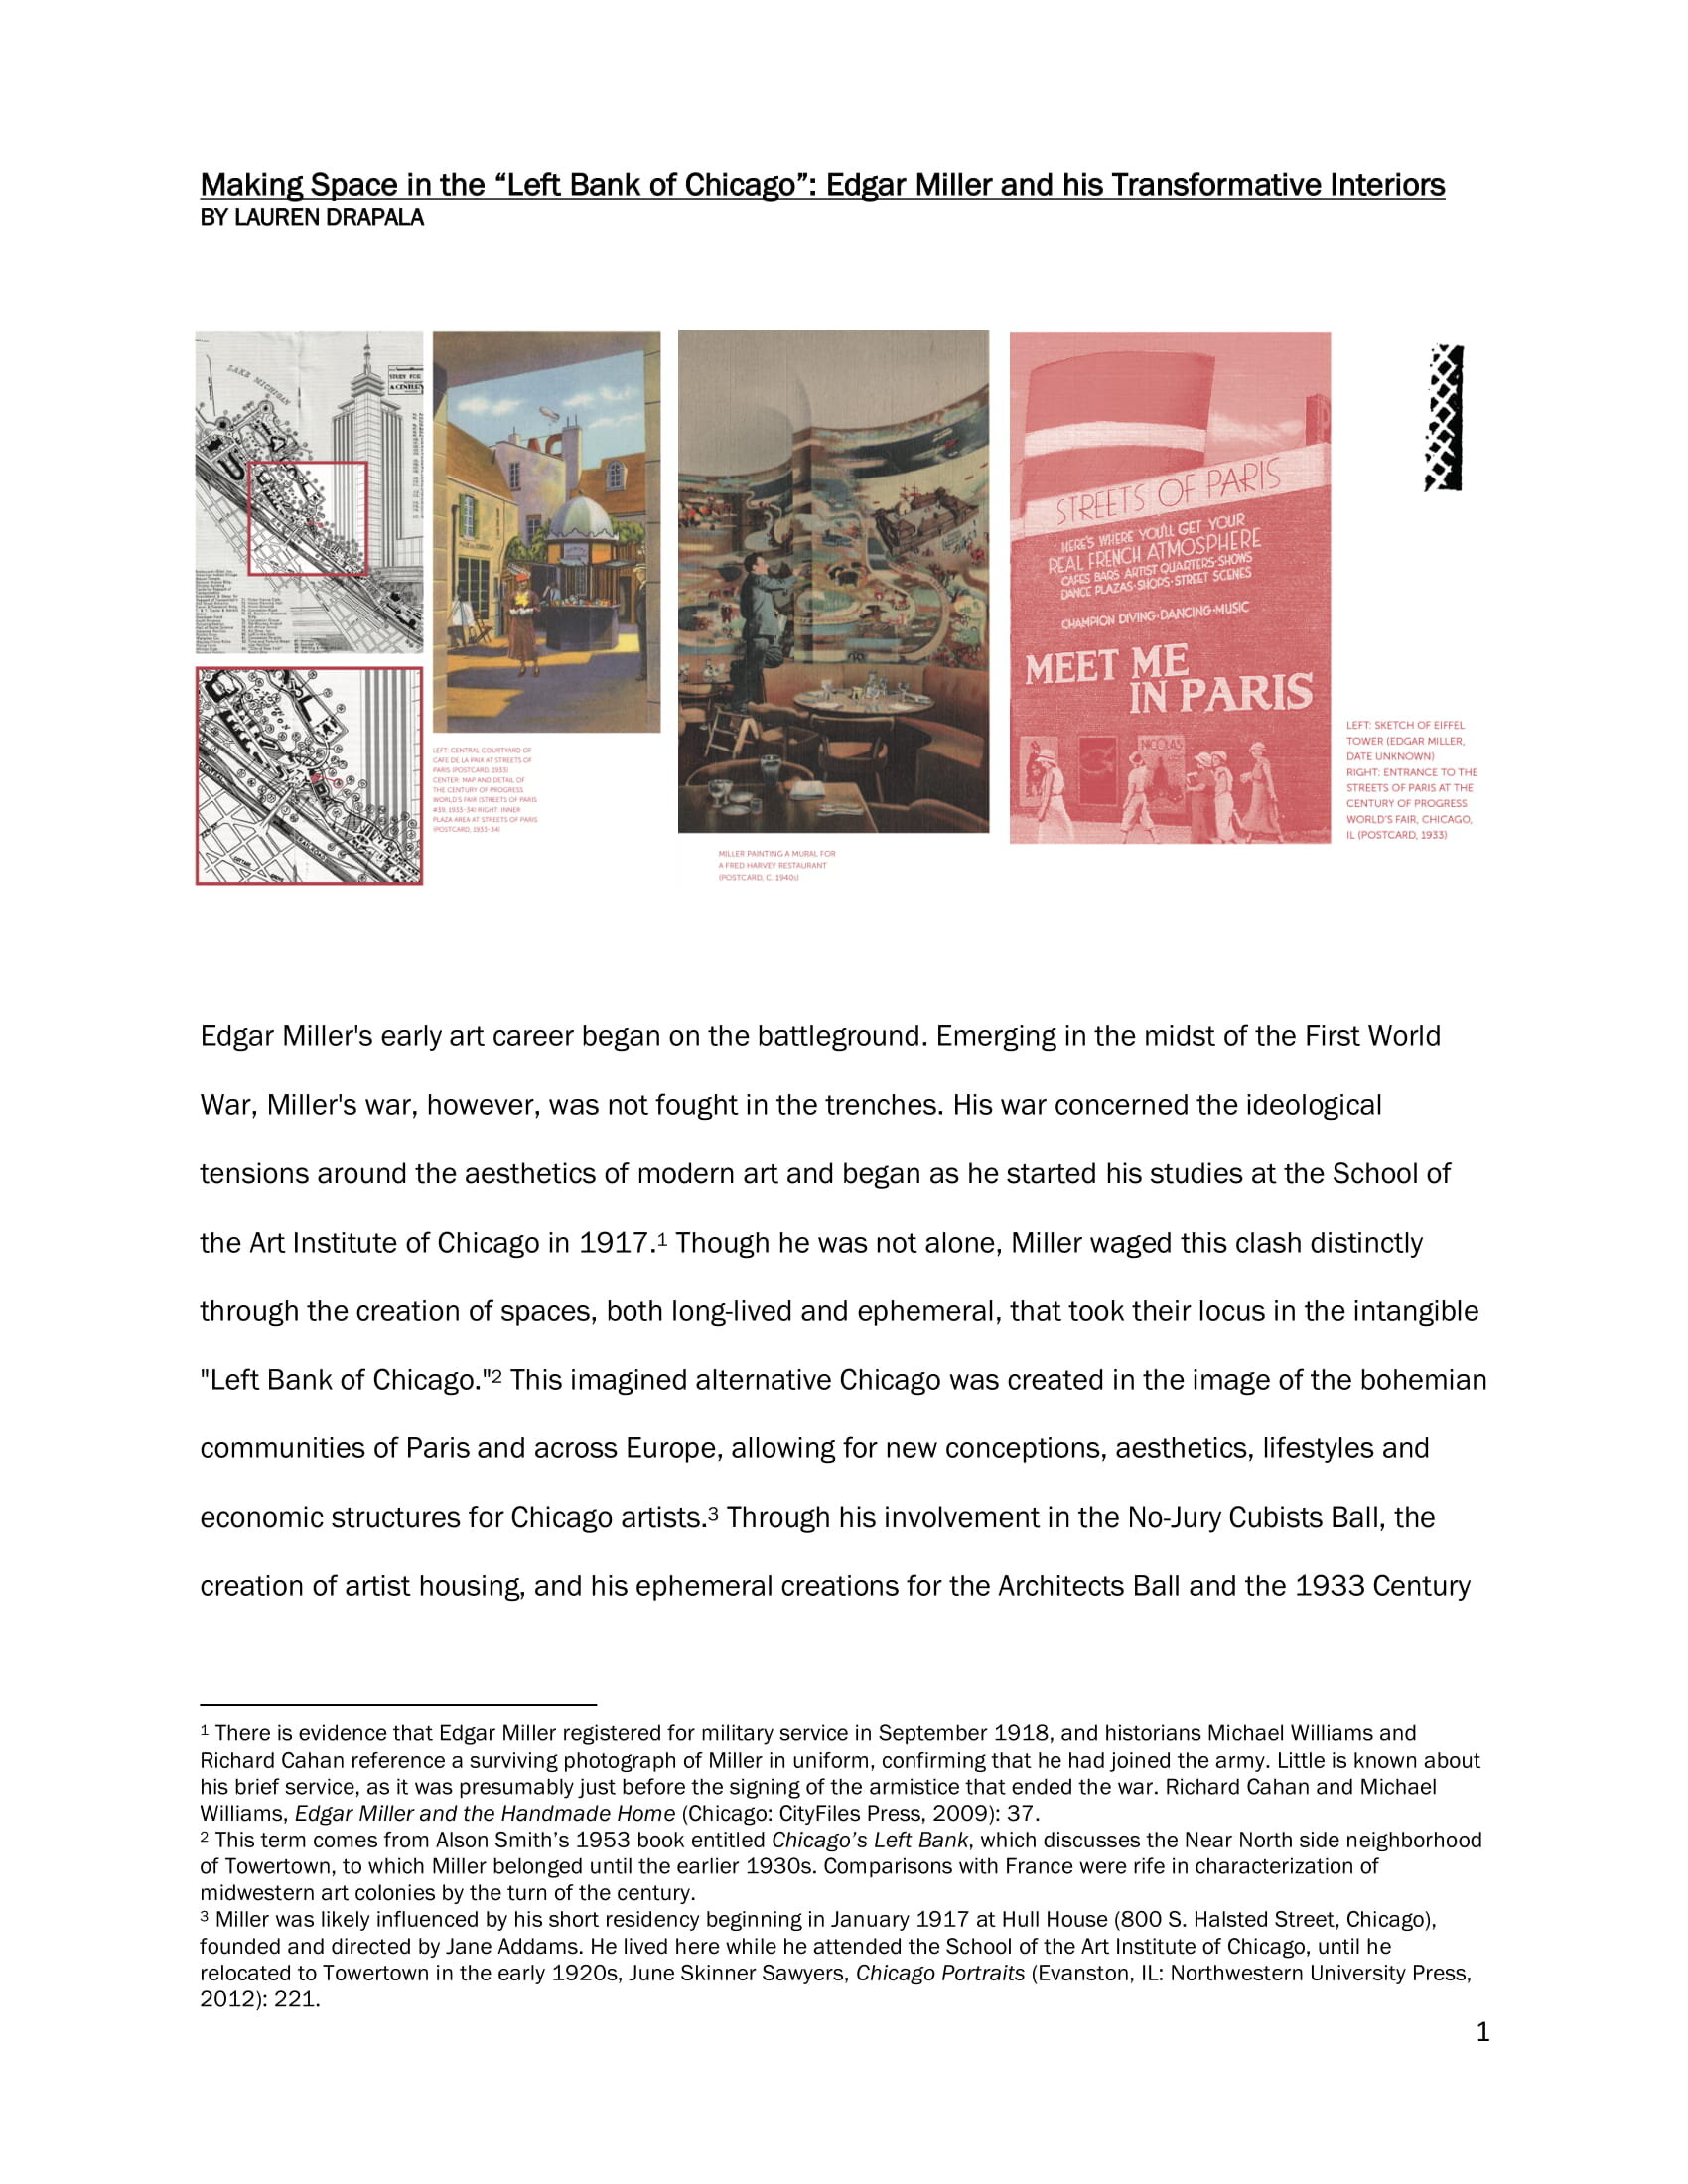 Streets of Paris Essay by Lauren Drapala - v Oct 2020_1-1-1.jpg